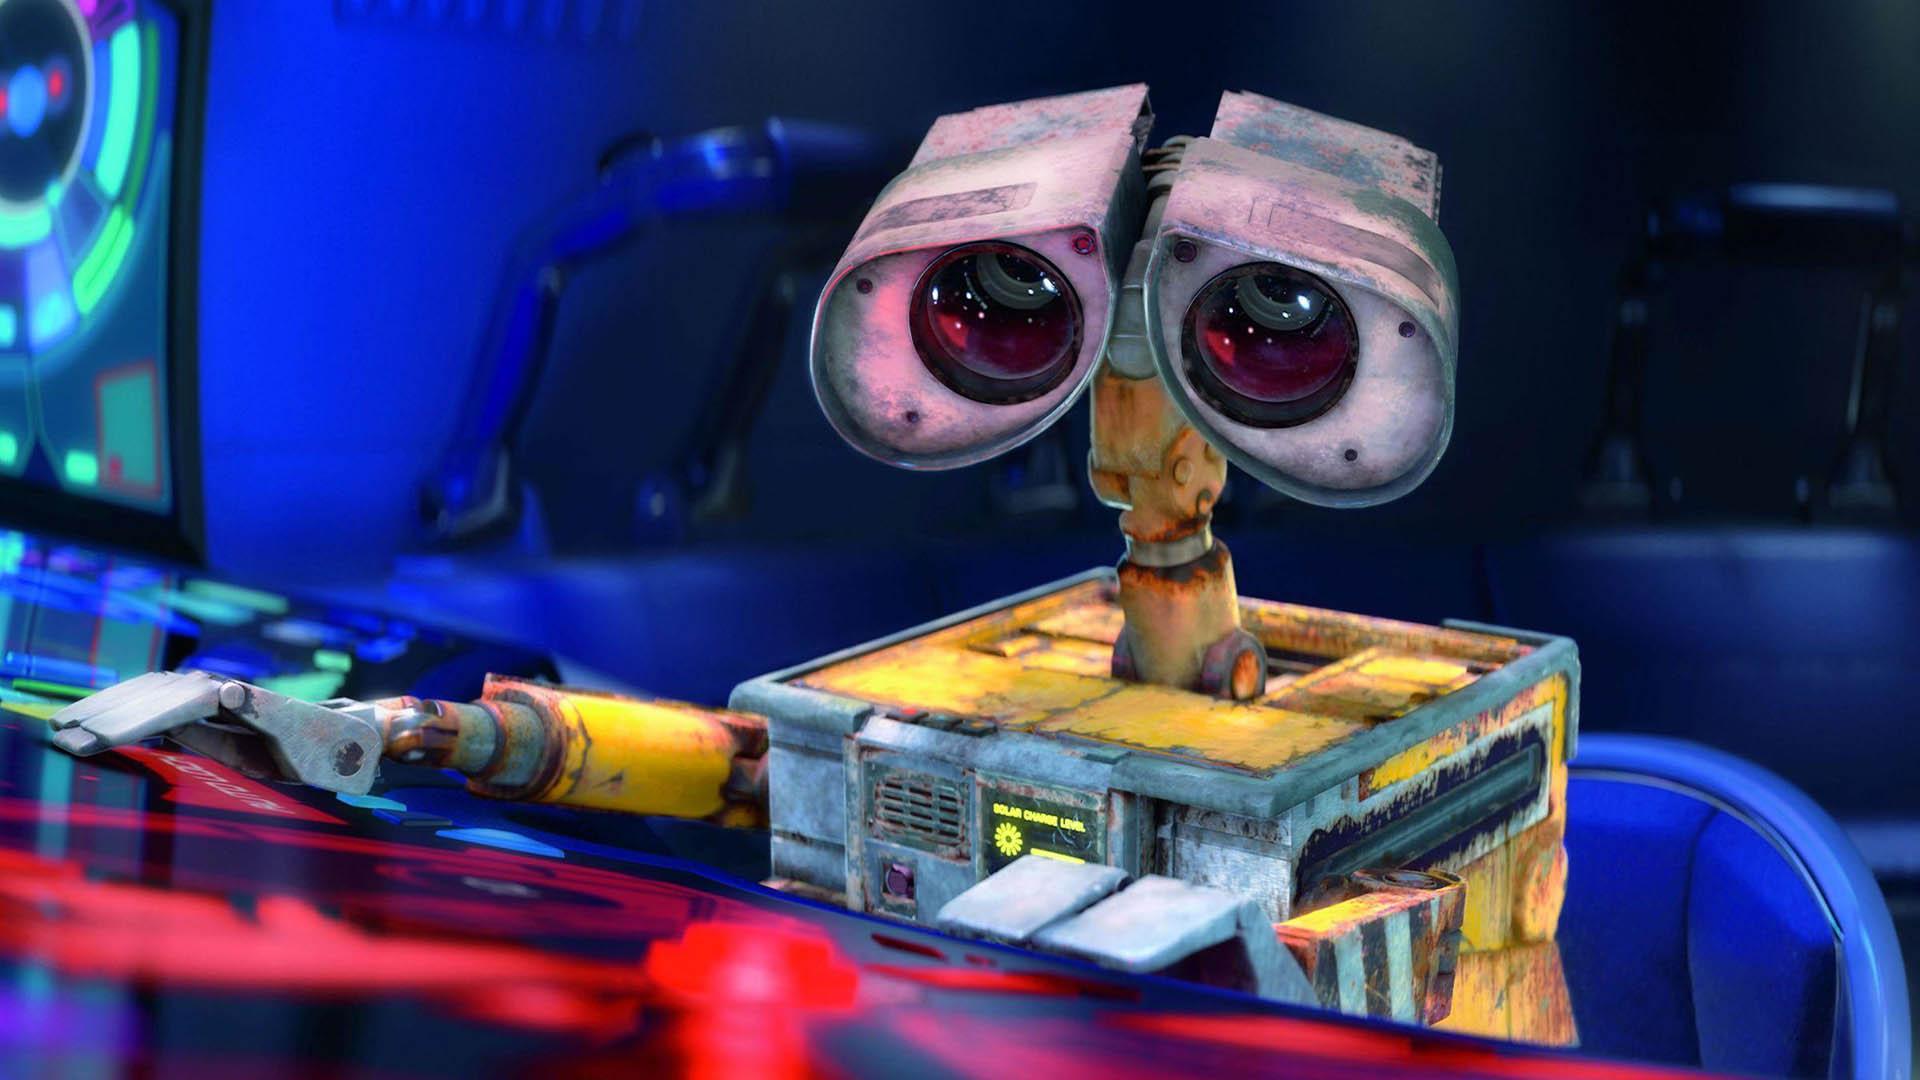 وال-ای در حال کارکردن با یک کامپیوتر در فیلم Wall-e